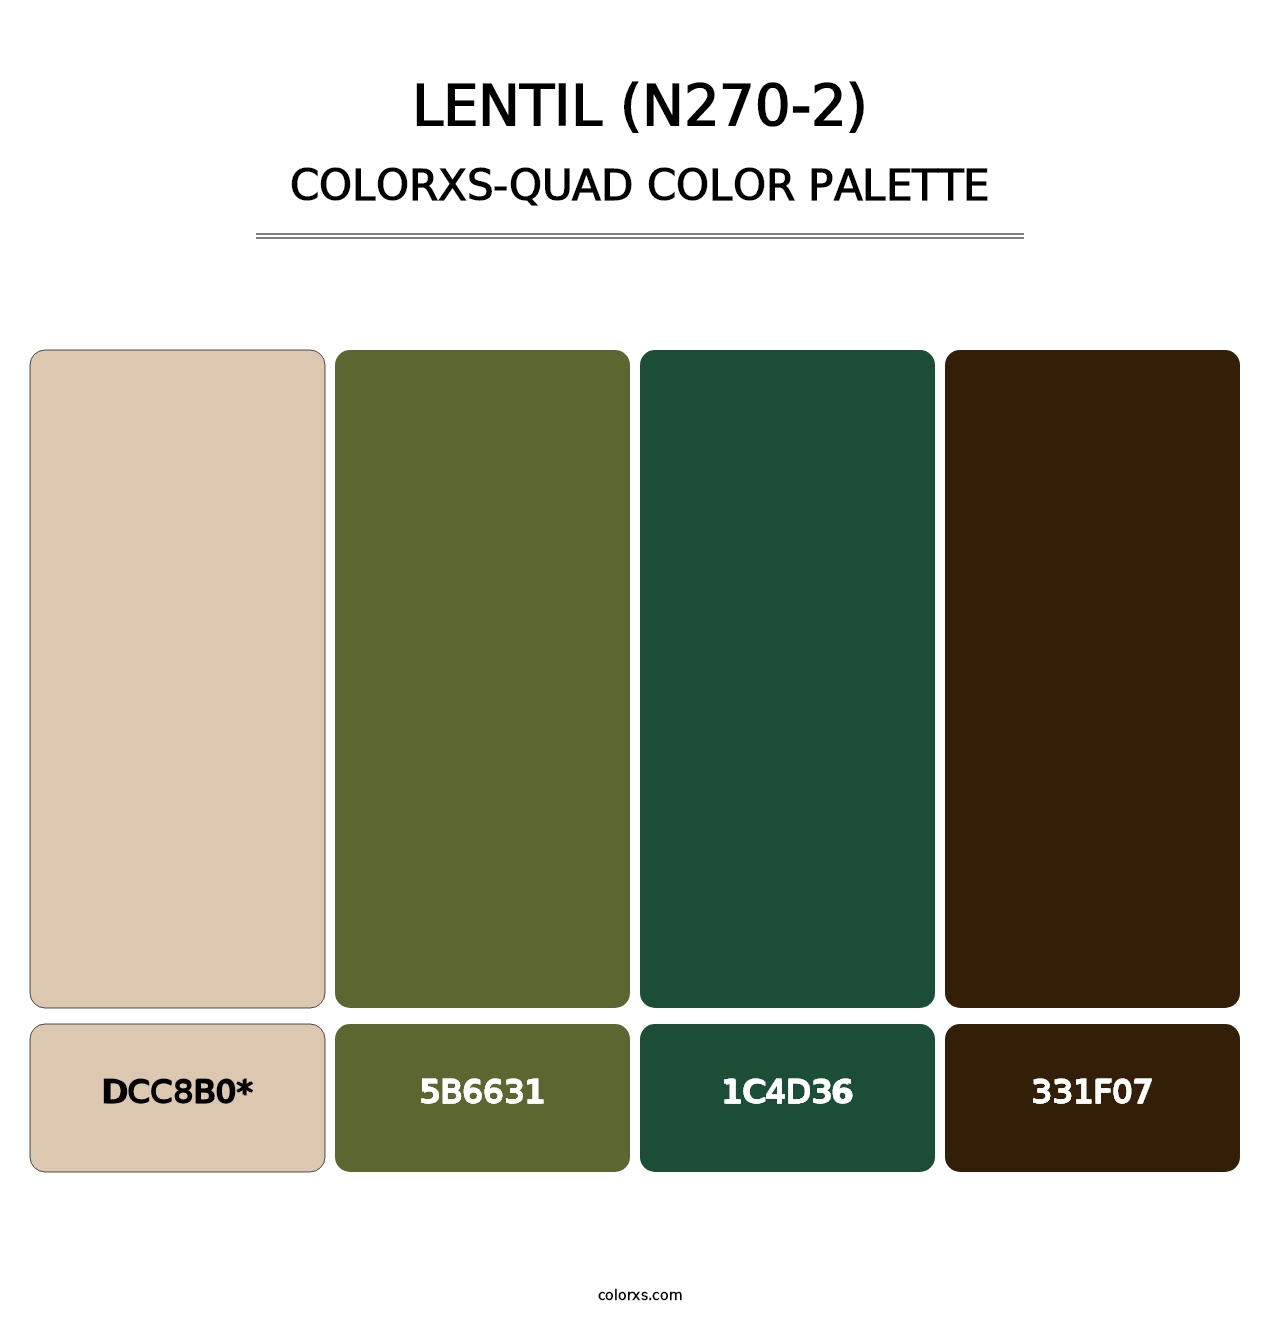 Lentil (N270-2) - Colorxs Quad Palette